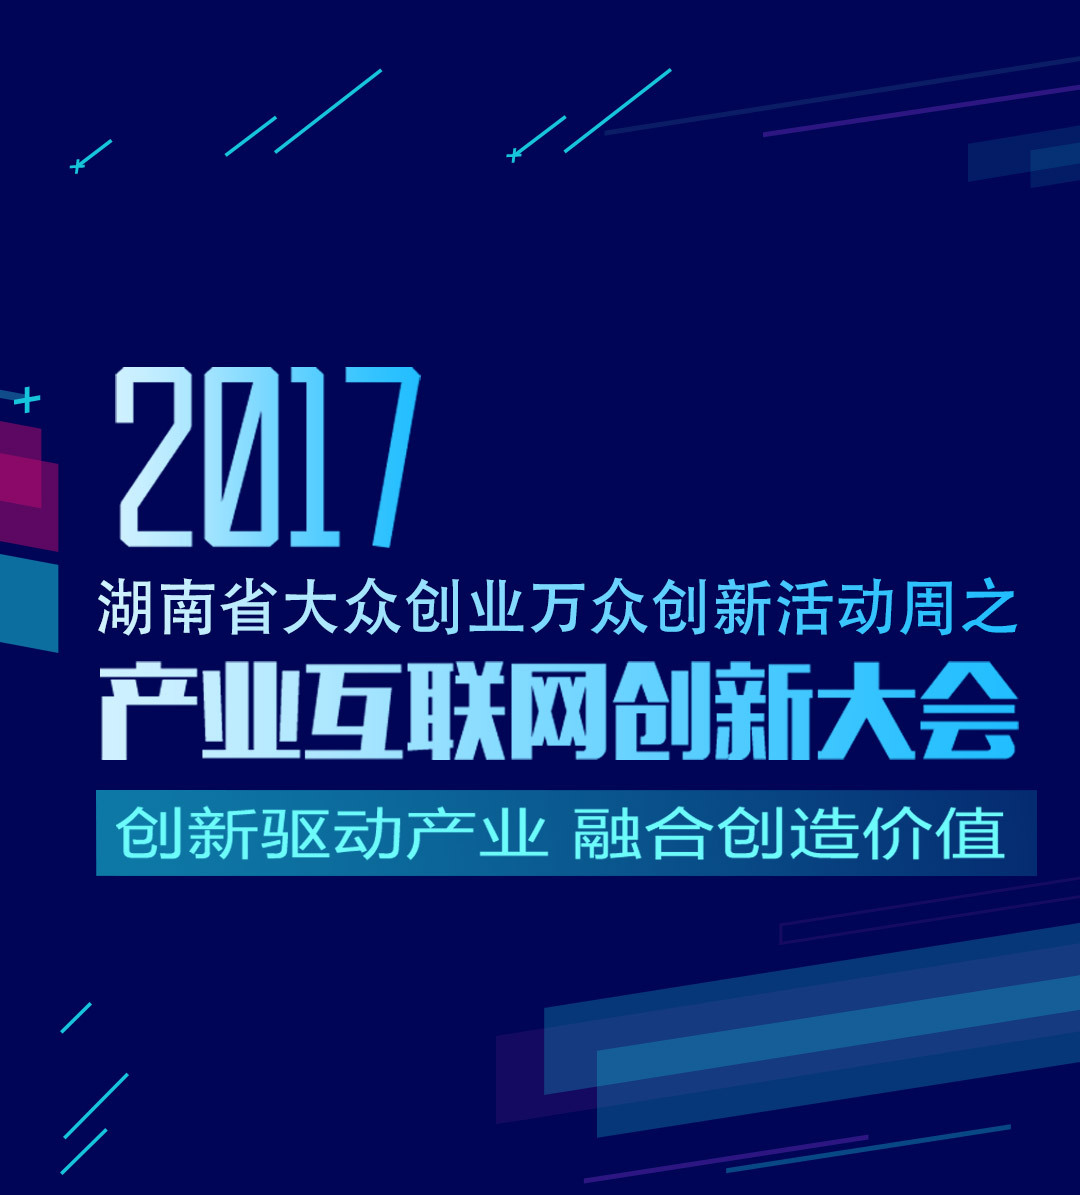 2017年产业互联网创新大会